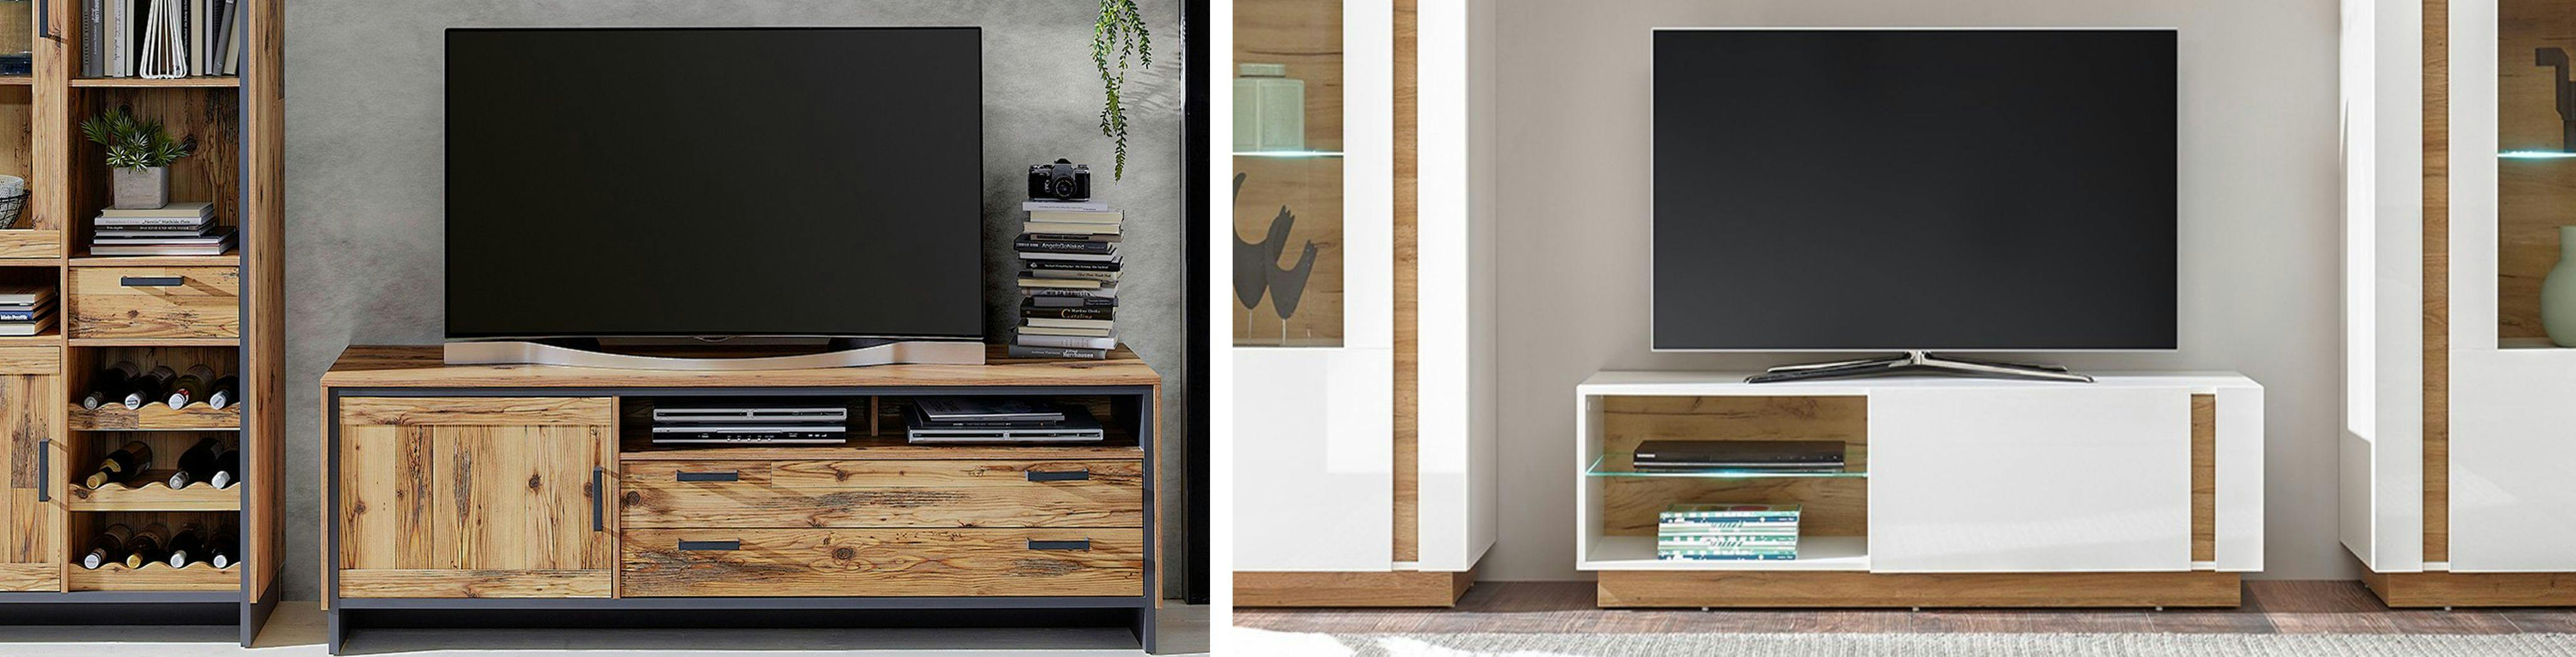 Combo de deux photos de deux meubles tv de styles différents l'un en bois et métal noir, l'autre en bois clair et bois blanc